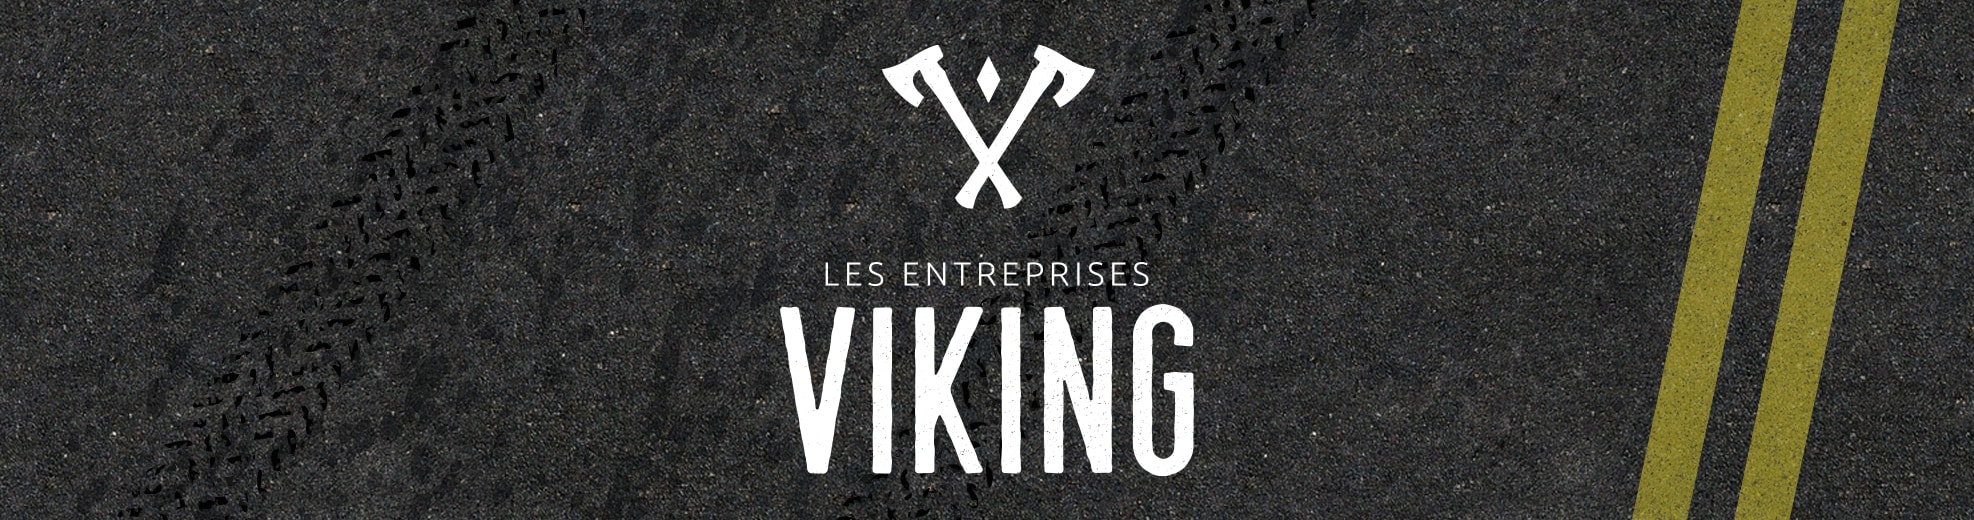 Brand Image - Les entreprises Viking